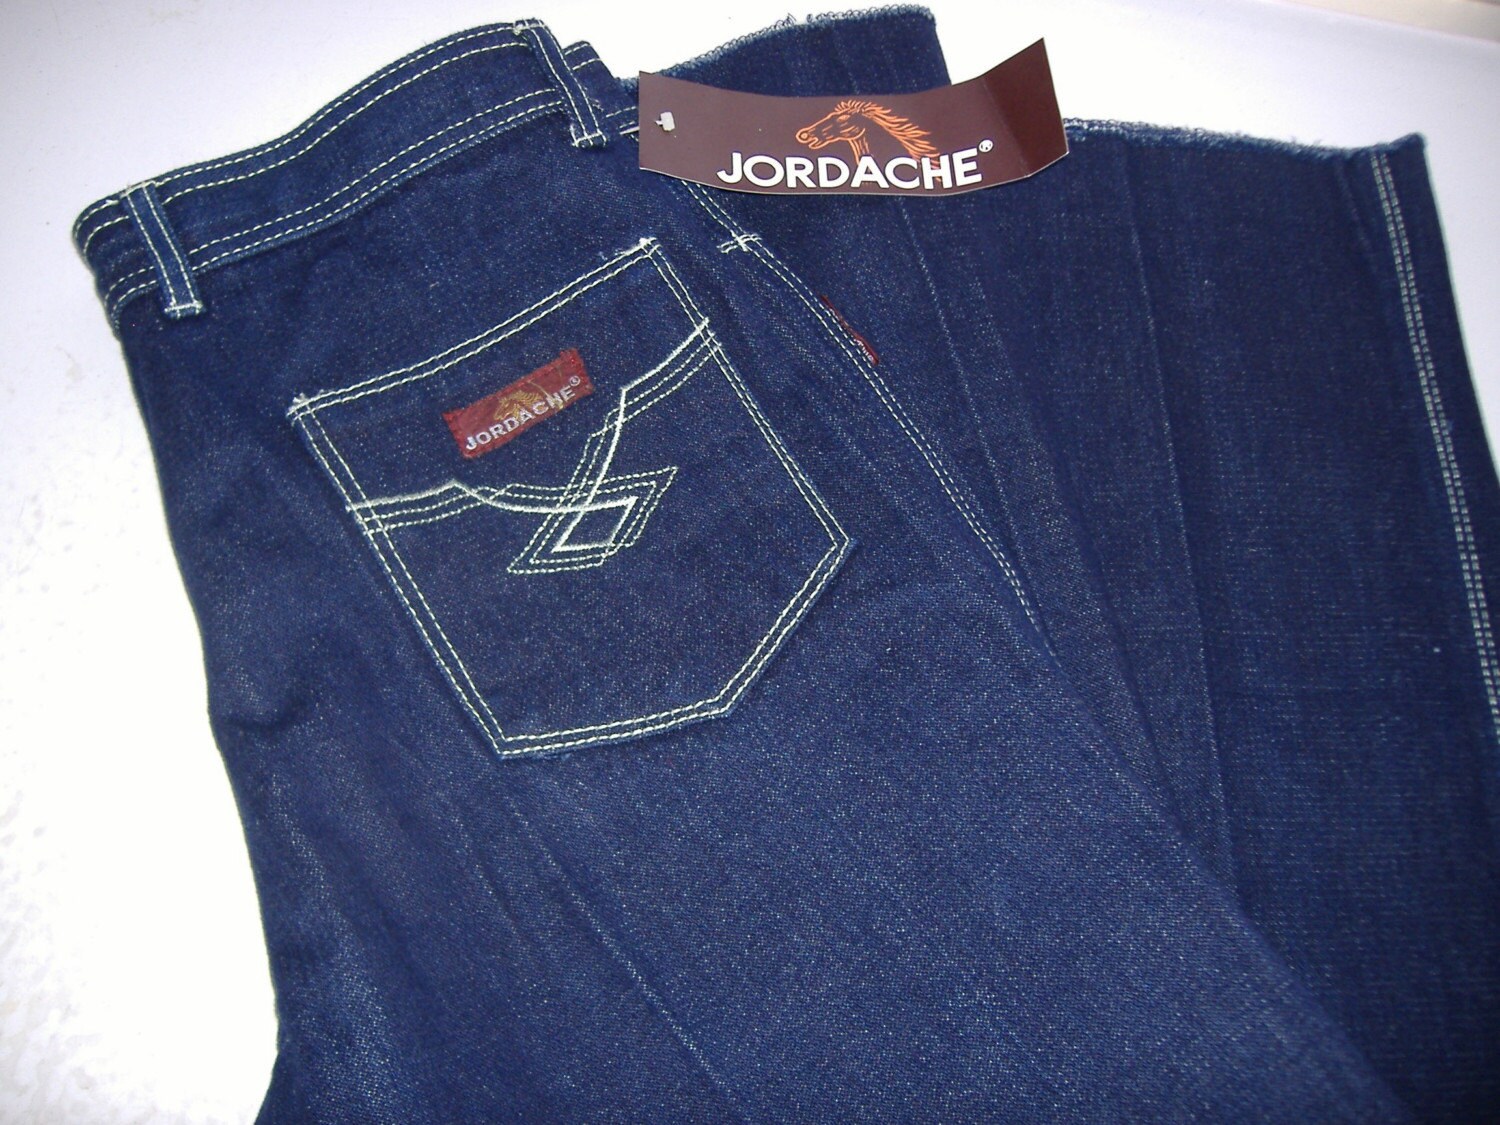 New jeans league. Jordache джинсы мужские. Jordache джинсы Basics. Джинсы мужские Jordache Basics. Джинсы Jordache Carpenter.